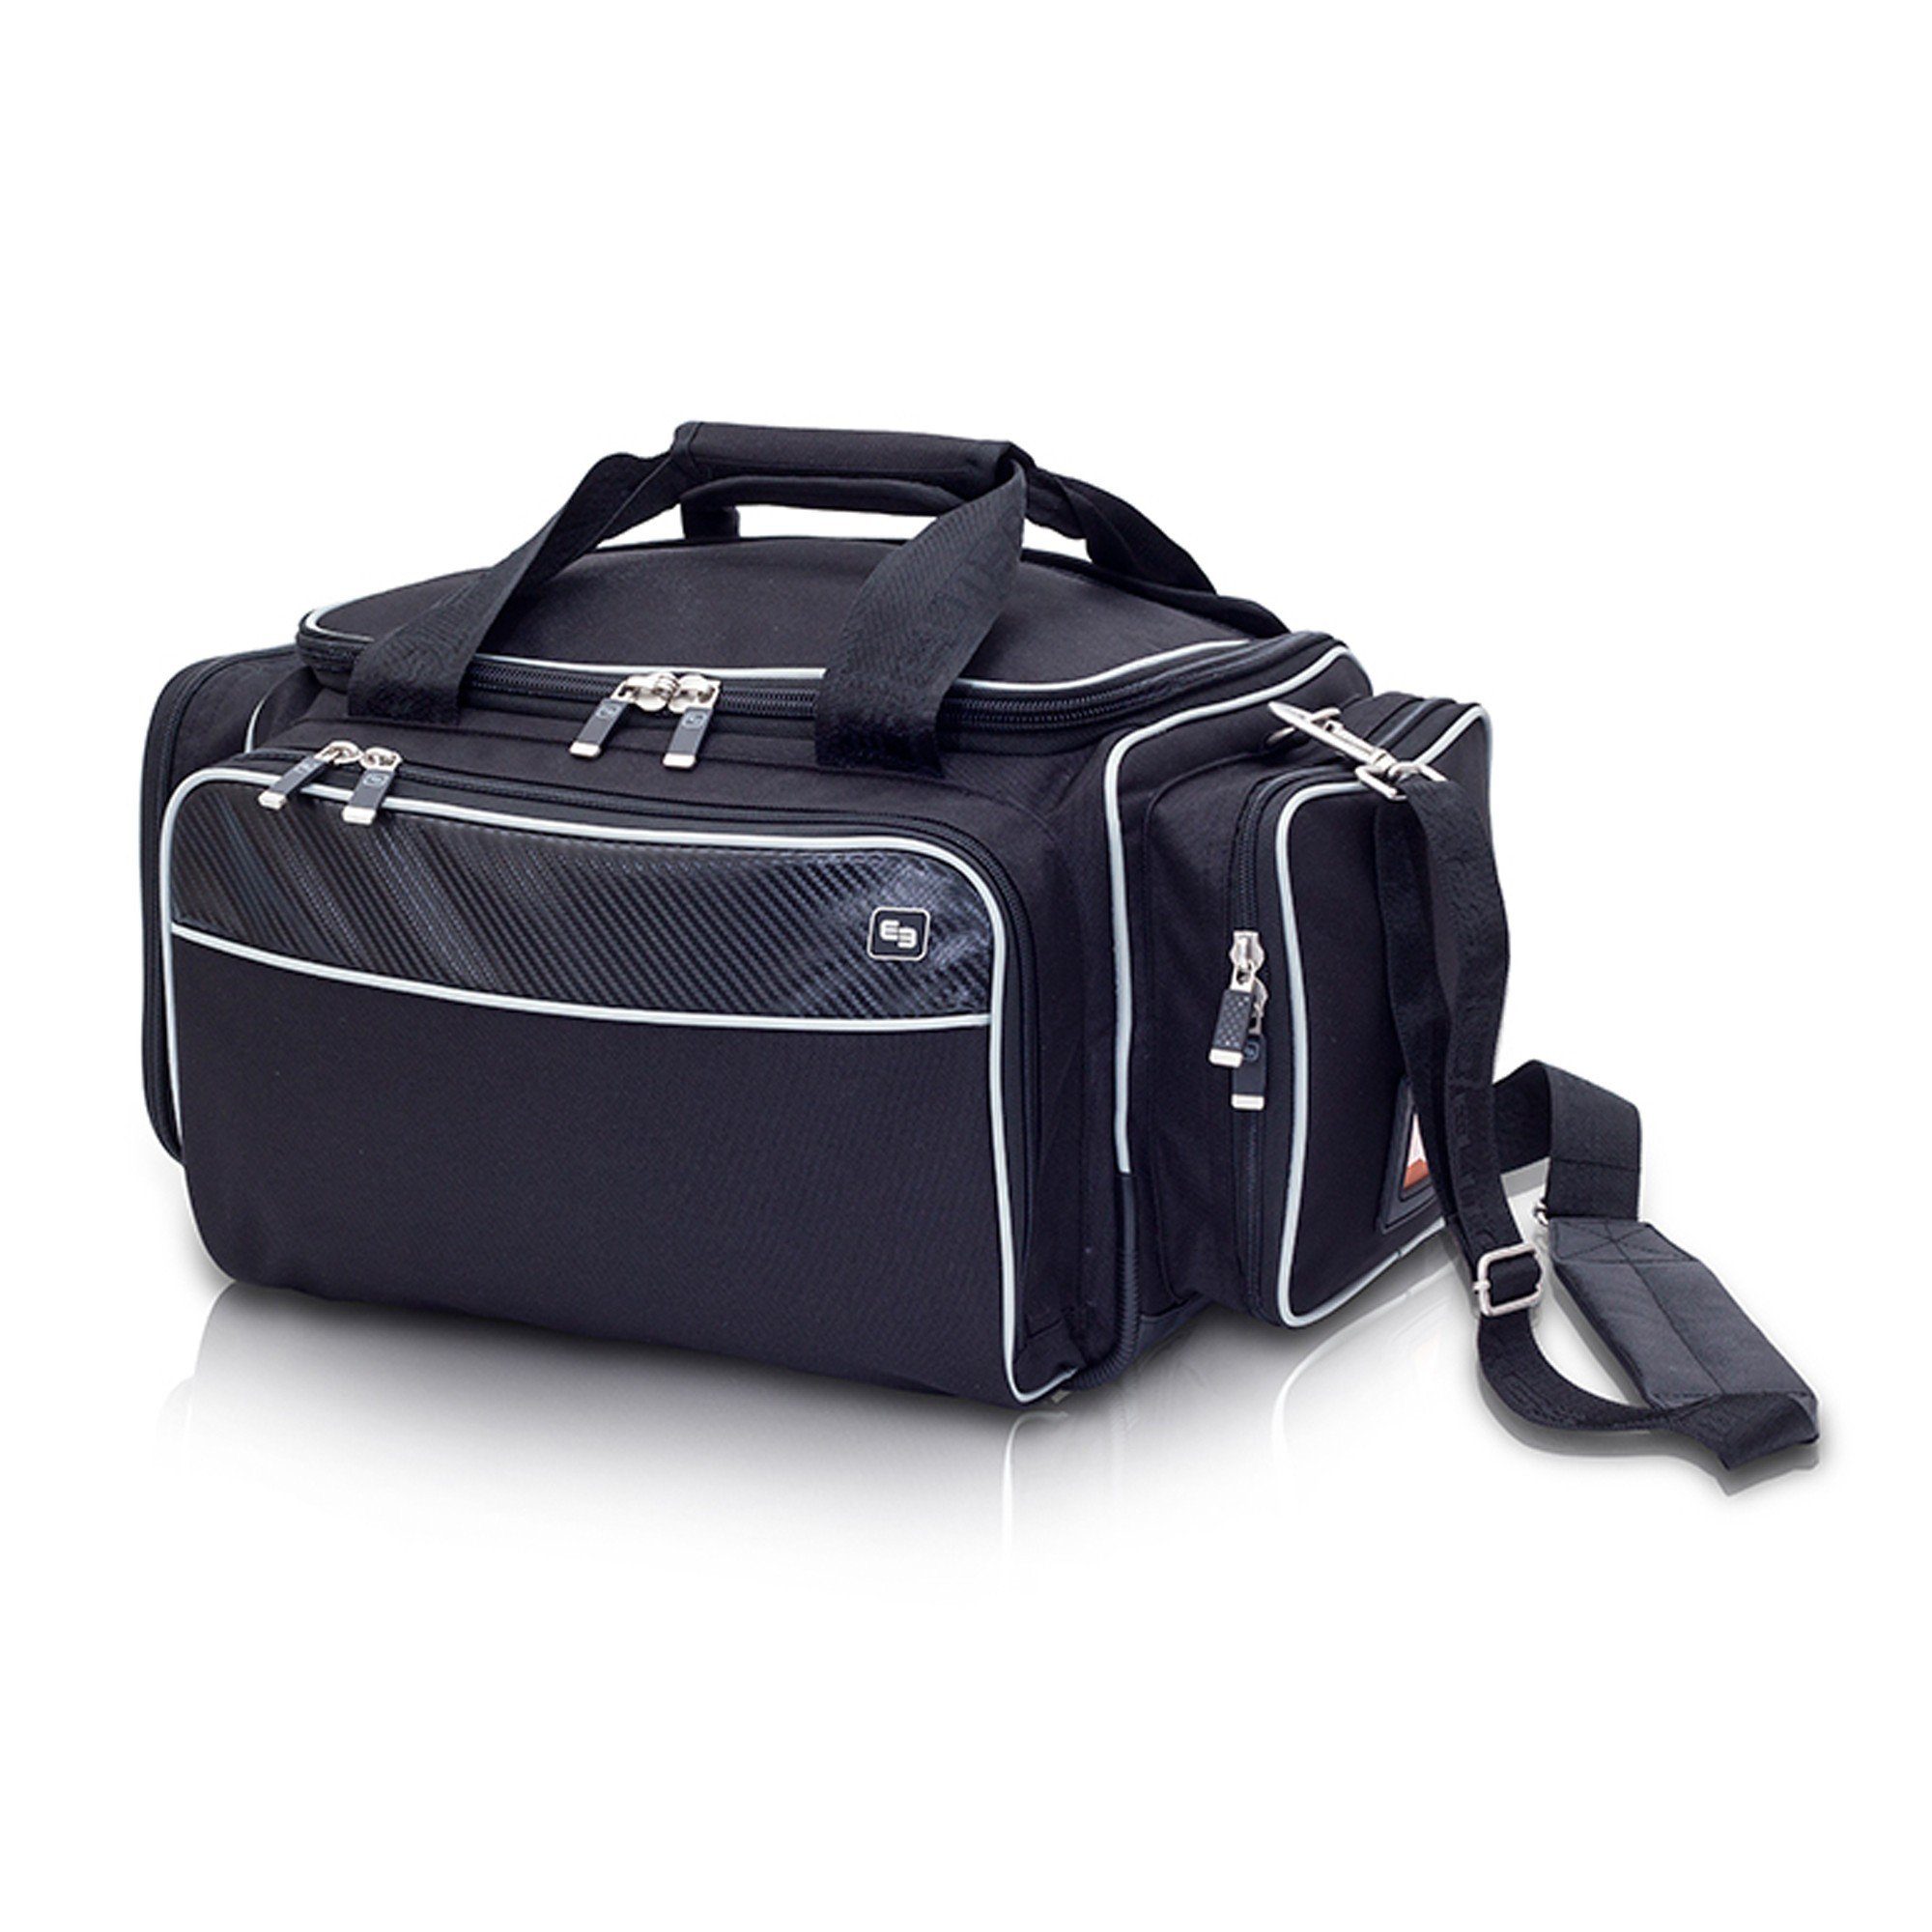 Schwarz Bags Bags MEDIC´S Softbag-Arzttasche 27 x 29 Elite Elite x Arzttasche cm 46